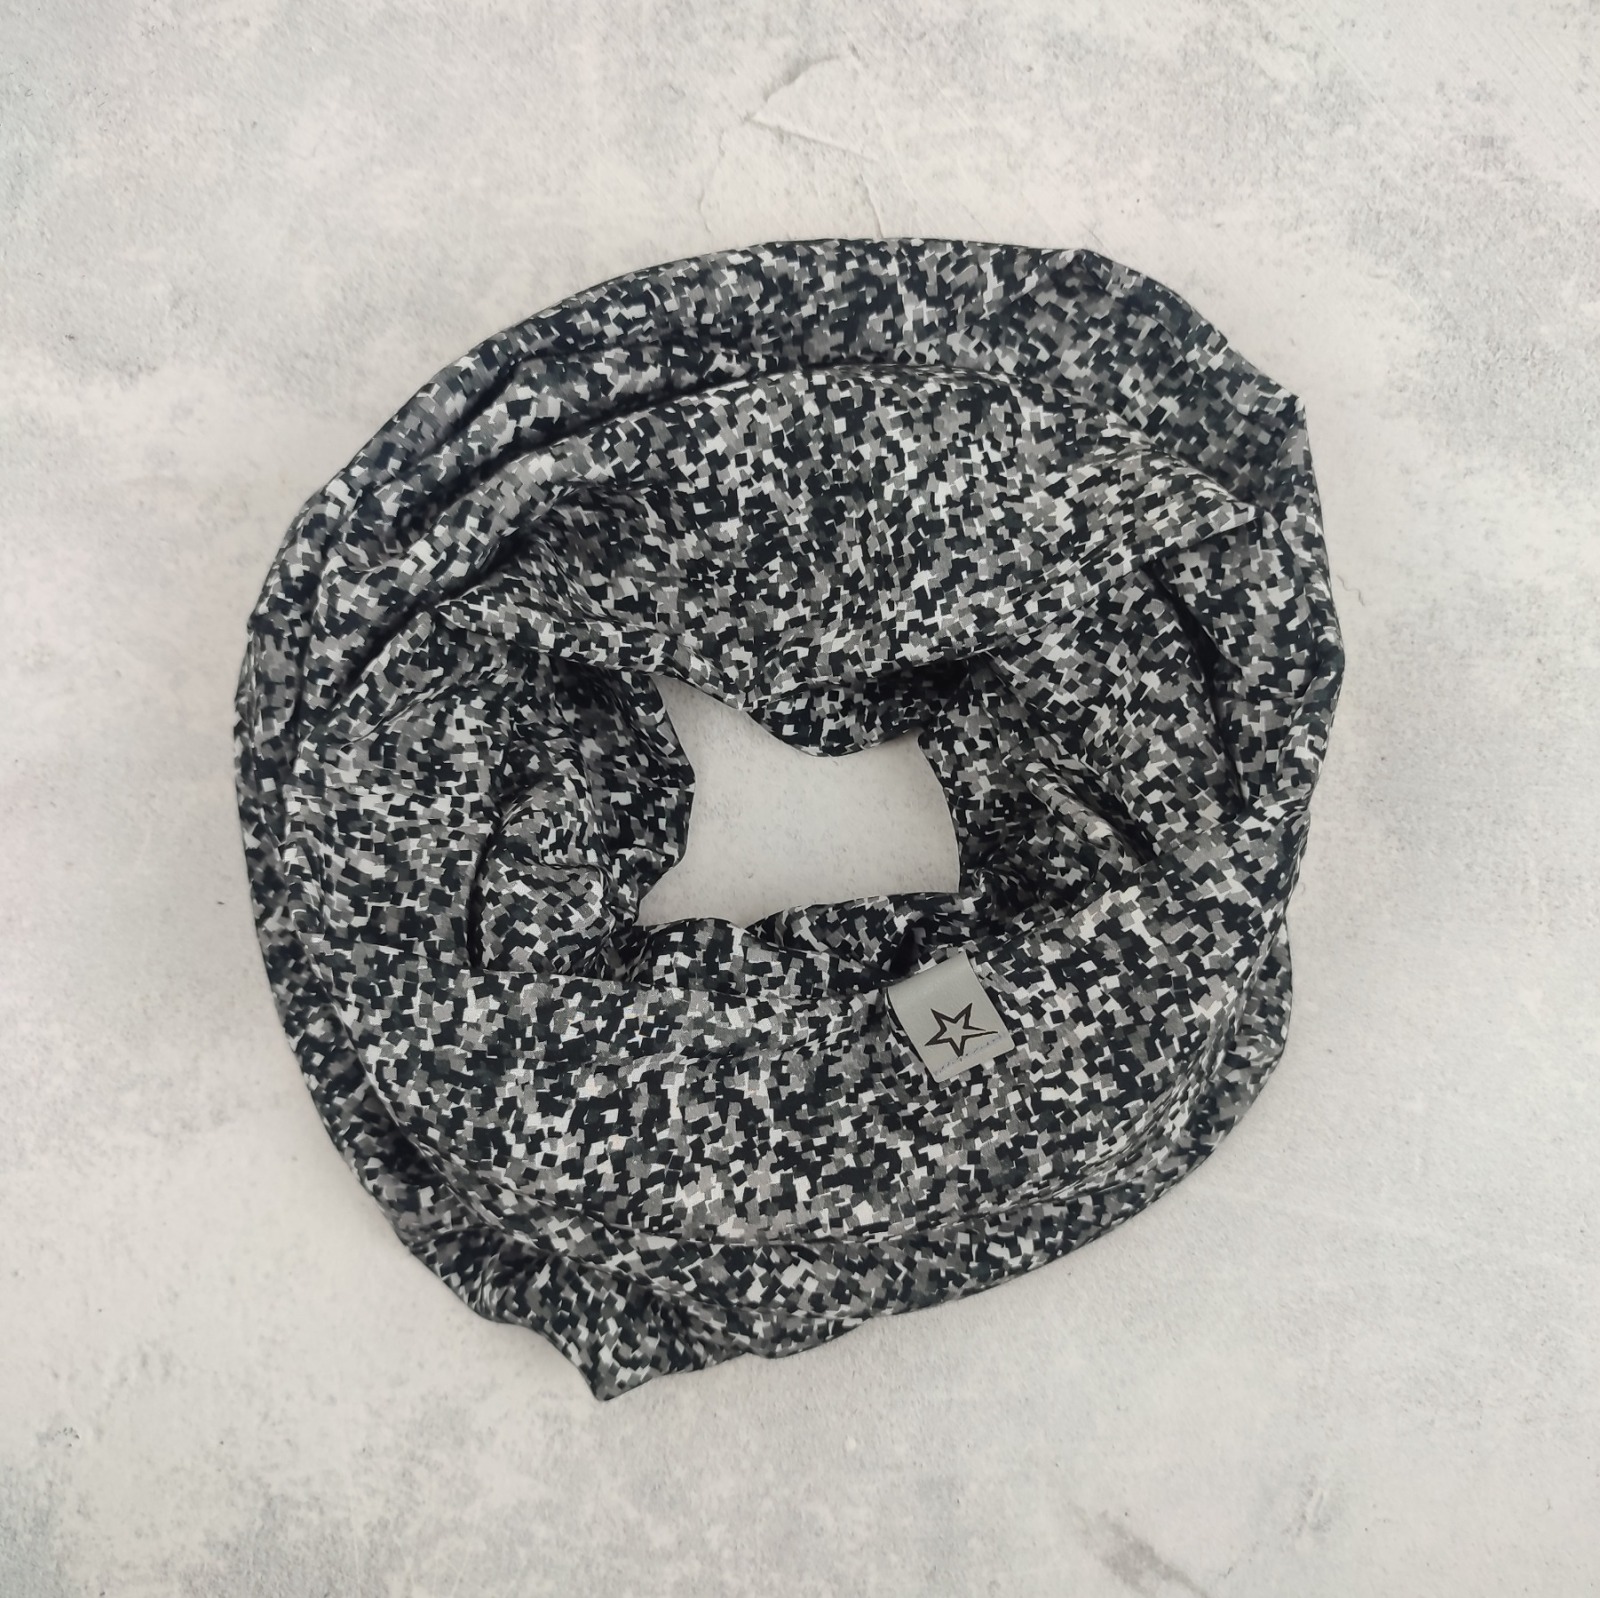 Dünner Loop aus Viskosestoff für Damen - Mosaikmuster schwarz weiß grau 4